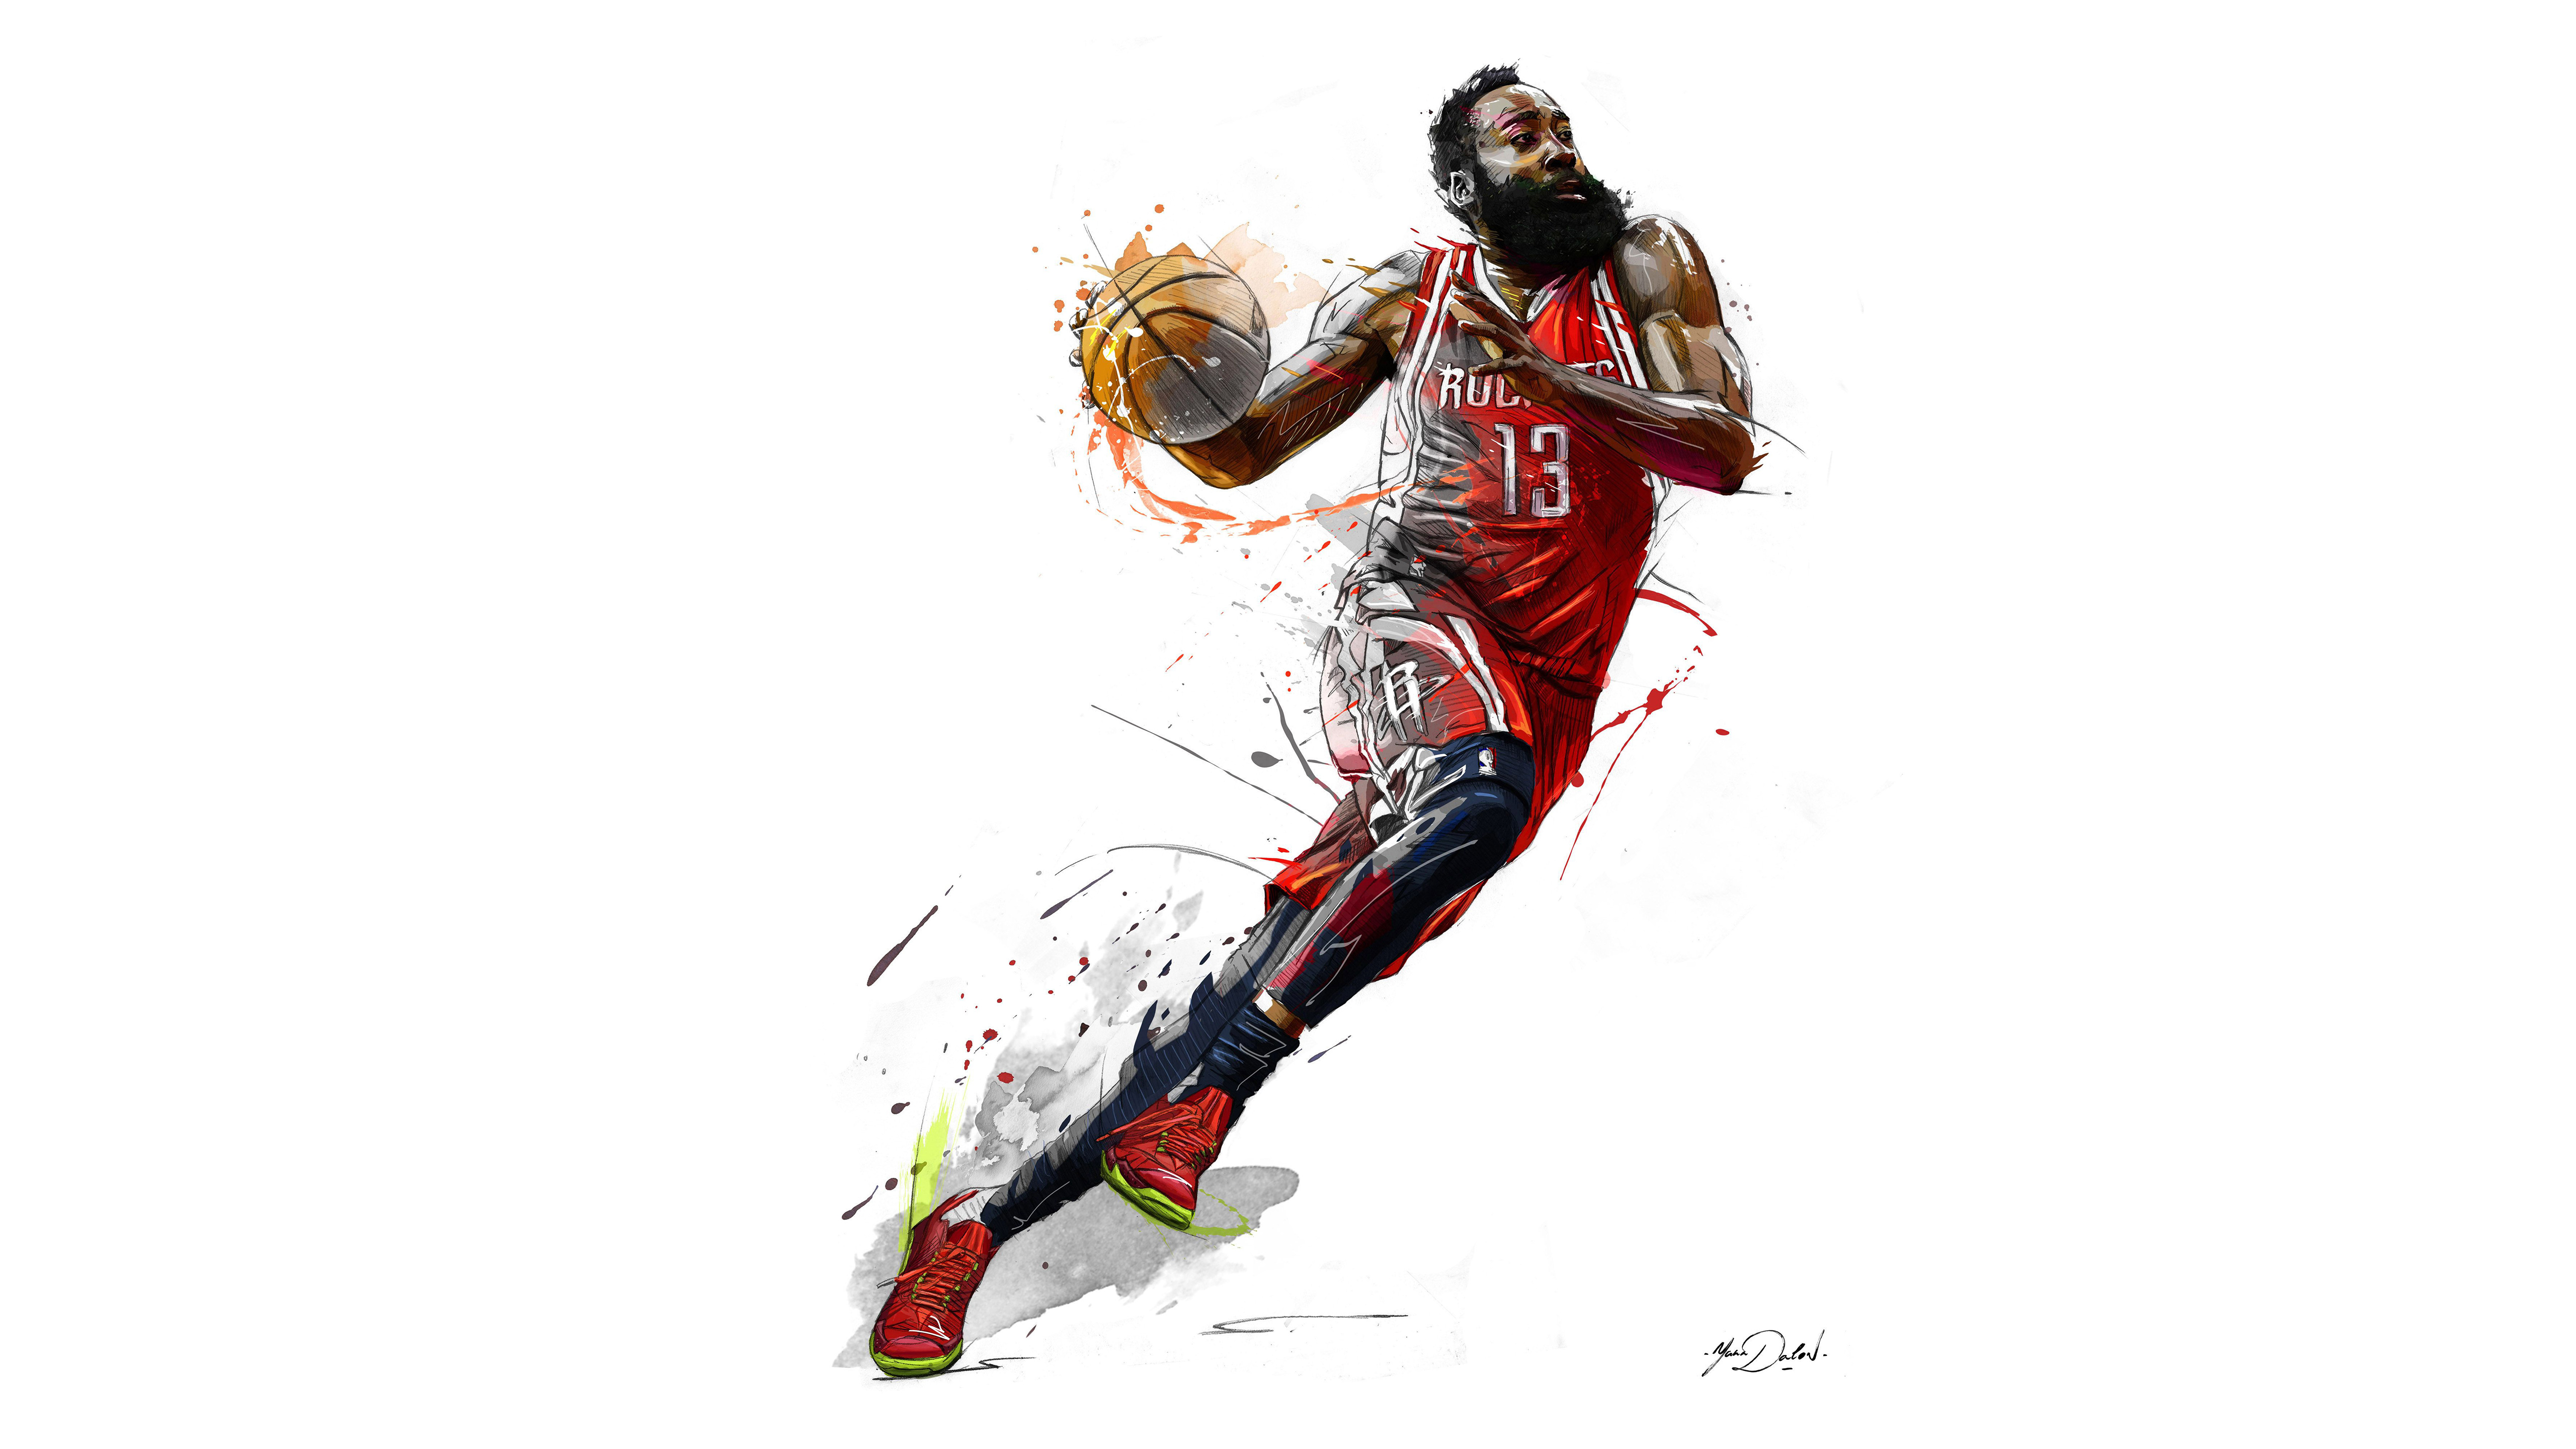 Basketball Player Art - HD Wallpaper 